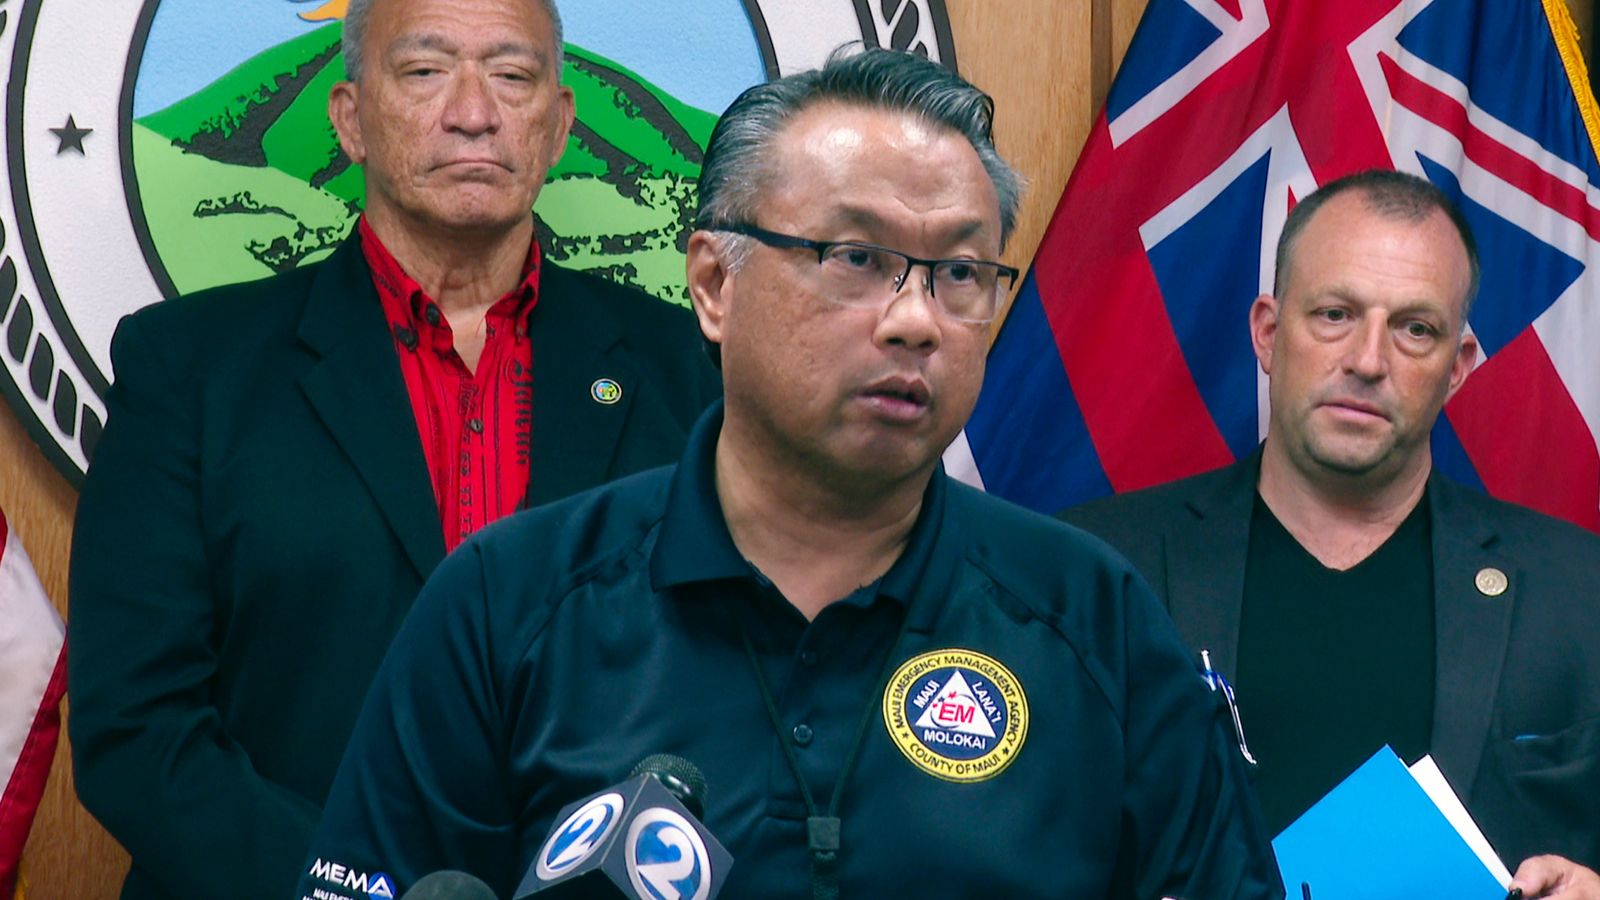 Горски пожари в Хавай: Шефът на службите за спешна помощ на Мауи подаде оставка след критики относно решението да не се активират сирените